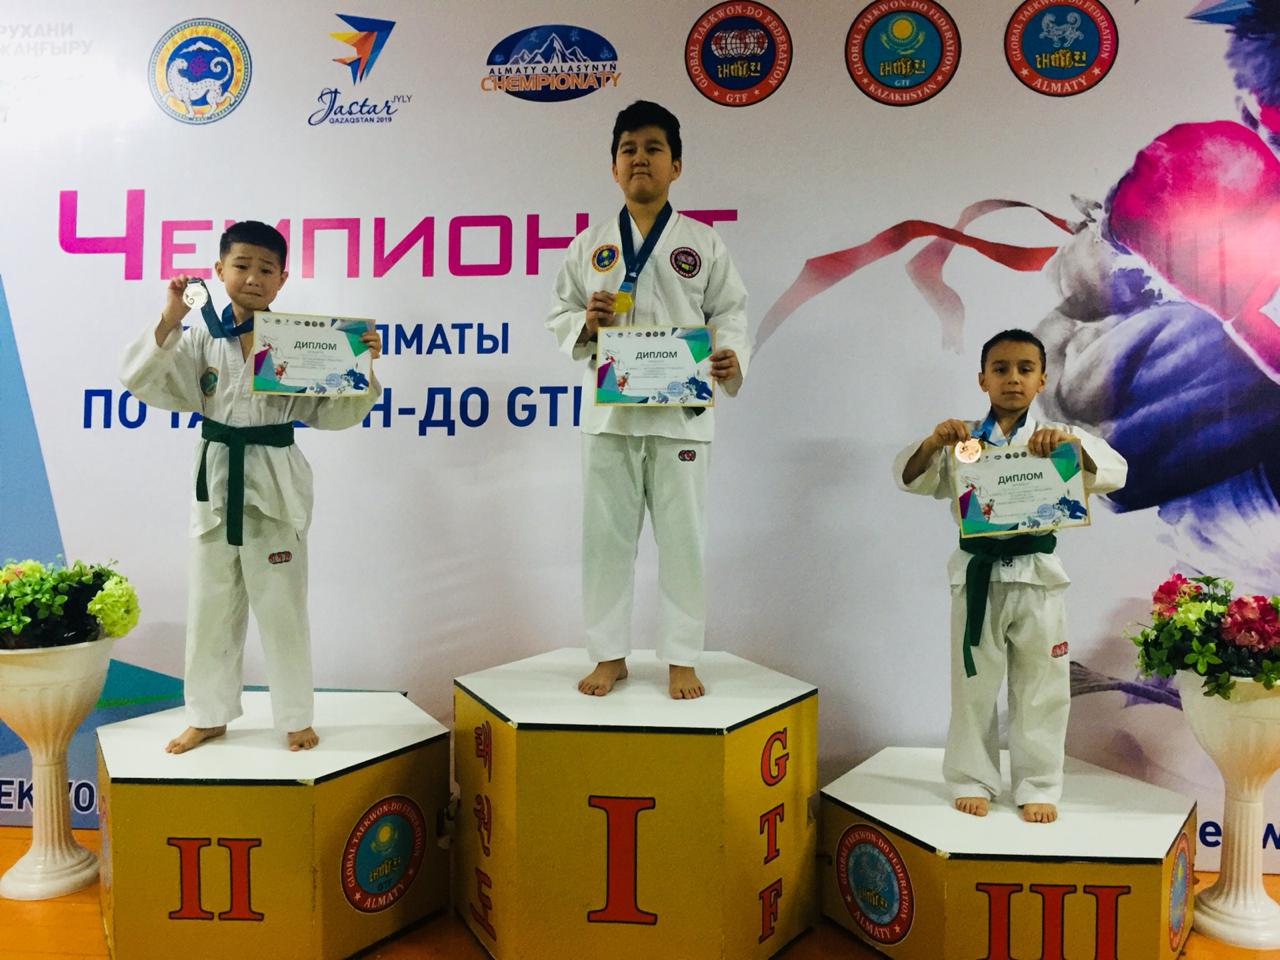  В школе-гимназии «Абылай» прошёл Чемпионат города Алматы по Таеквон-до ГТФ 